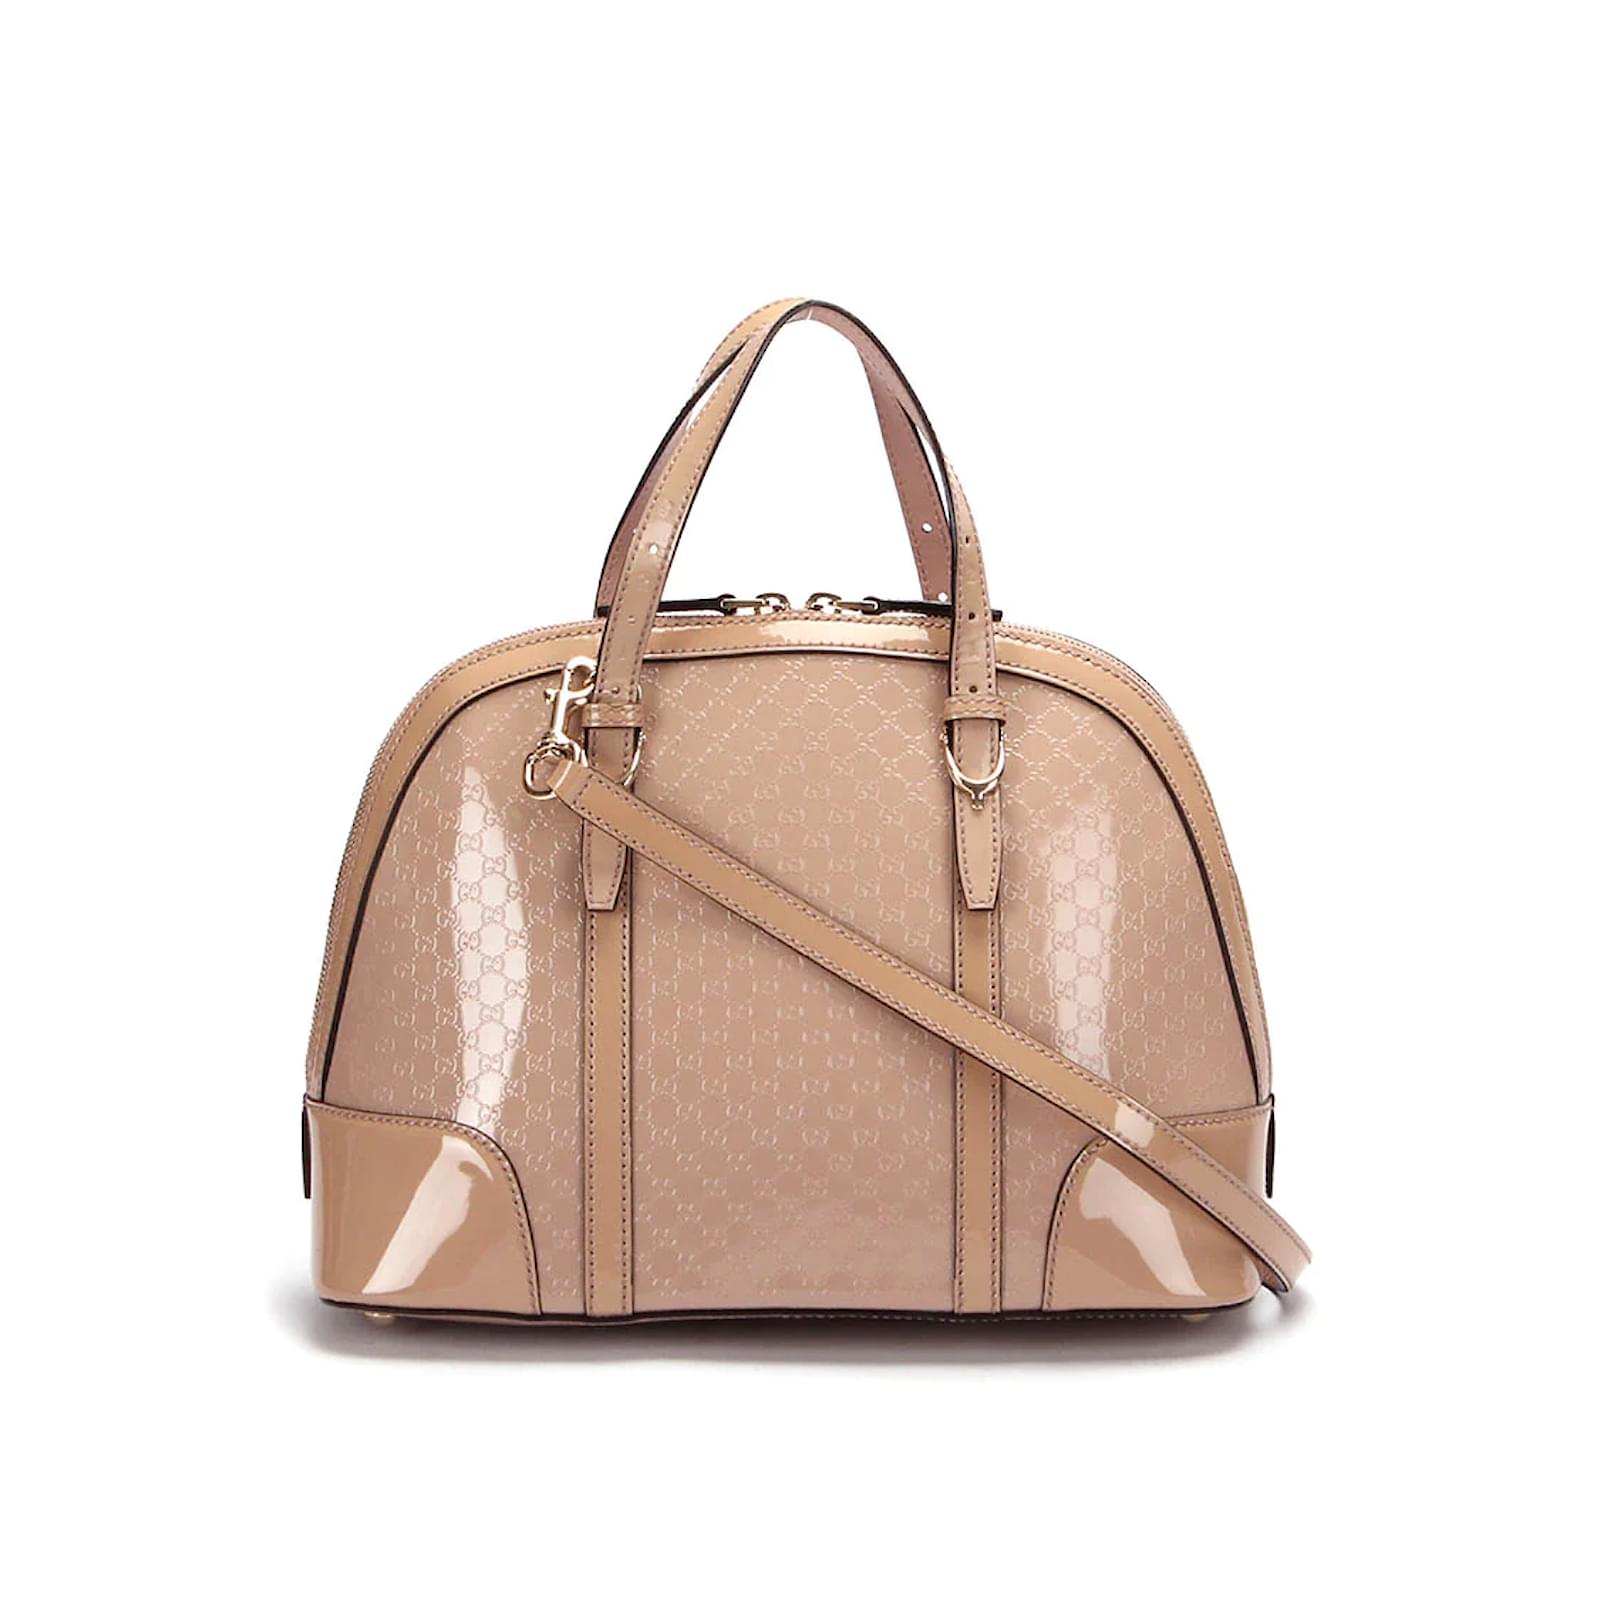 Gucci Pre-owned Mini Microguccissima Dome Satchel Bag